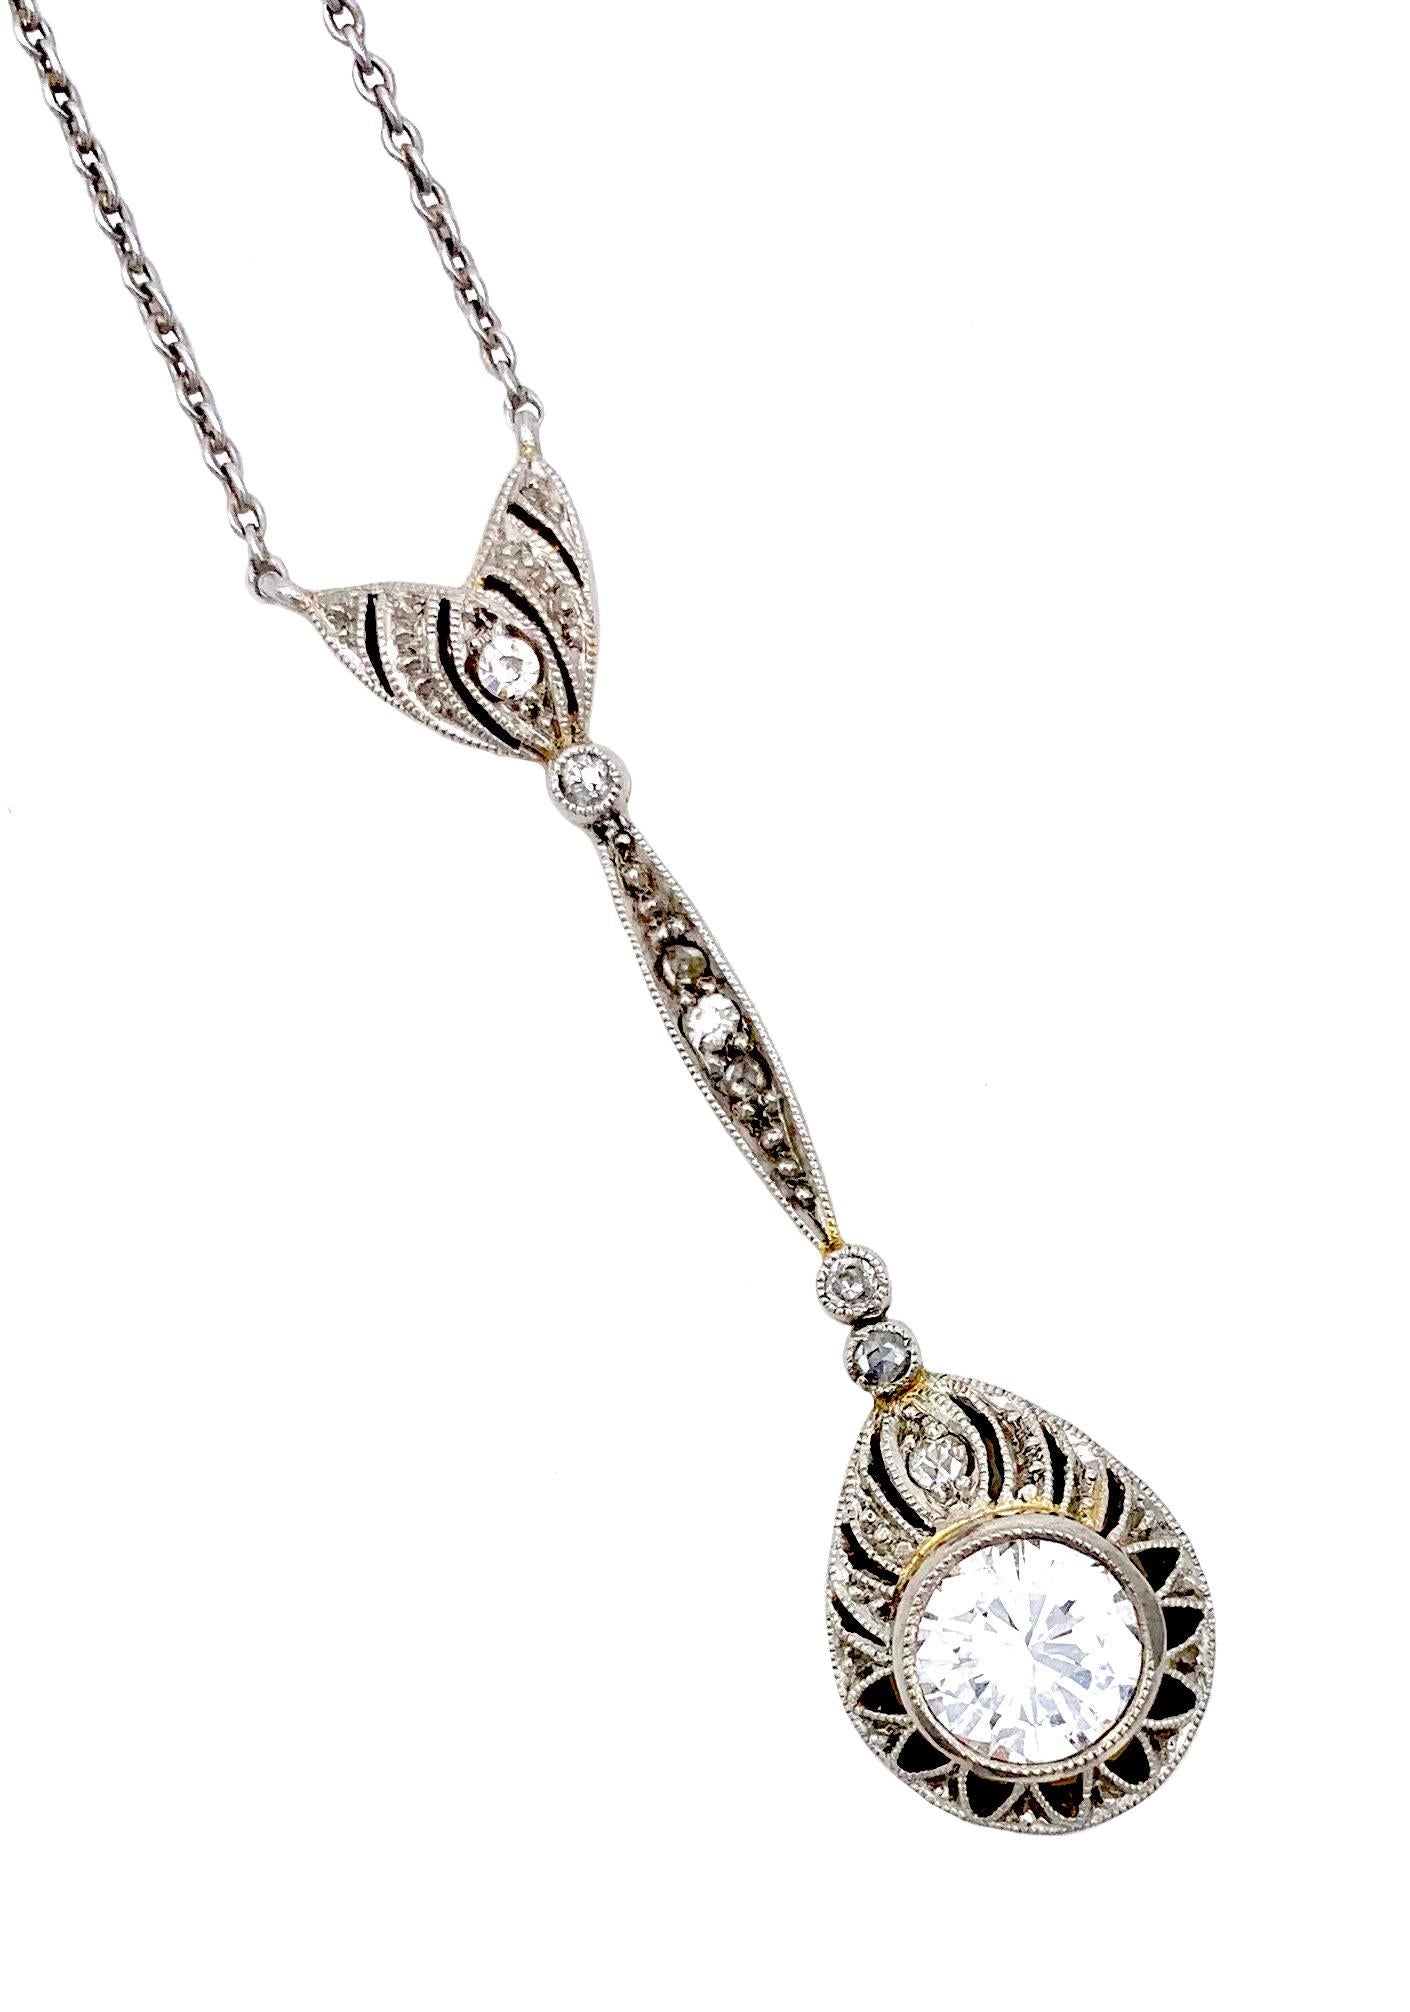 Brilliant Cut Antique Belle Époque Diamond Pendant Necklace !4 Karat White Gold Yellow Gold For Sale